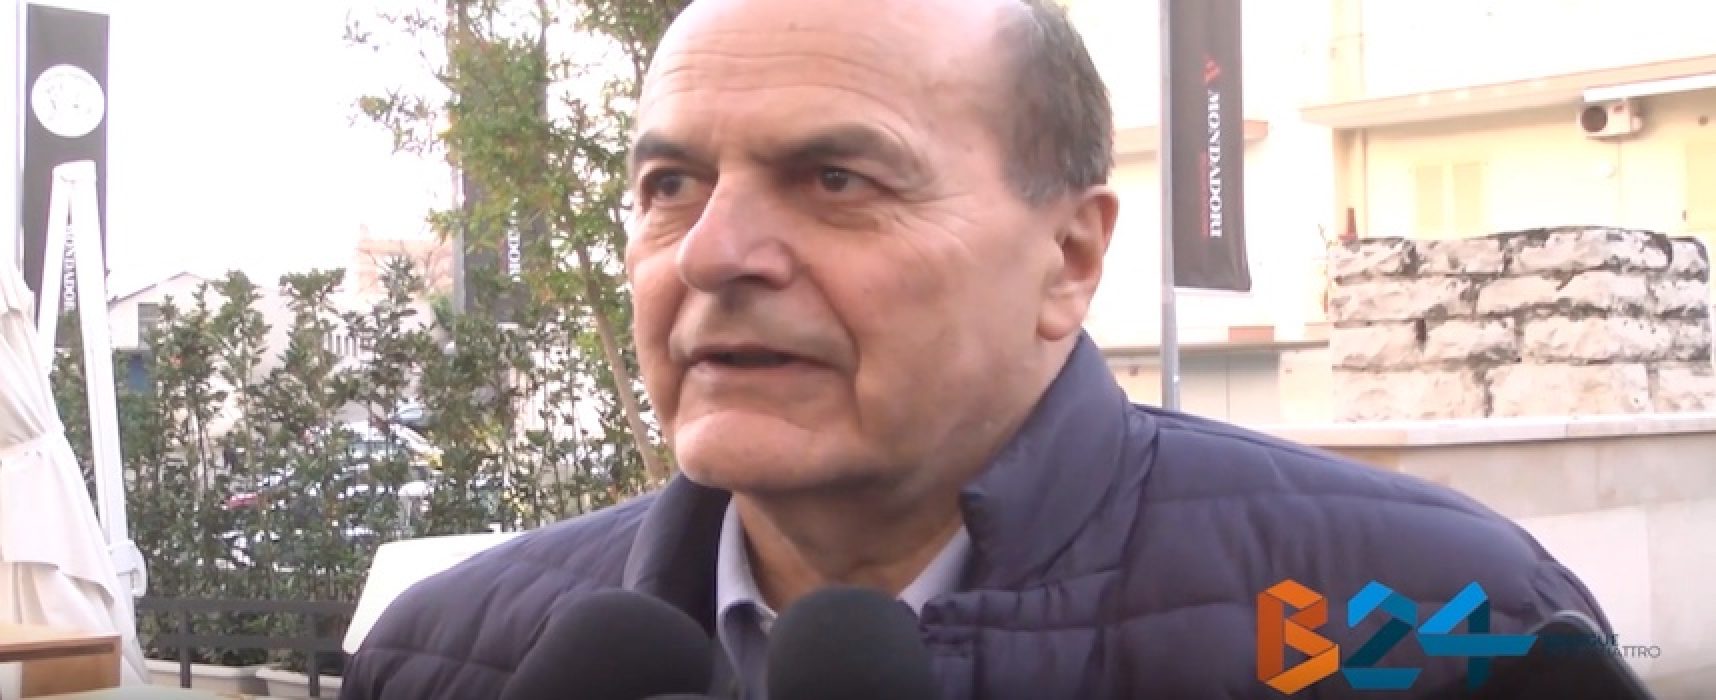 Rimpianti e speranze della sinistra, Bersani a Bisceglie dialoga con Padellaro e Truzzi / VIDEO